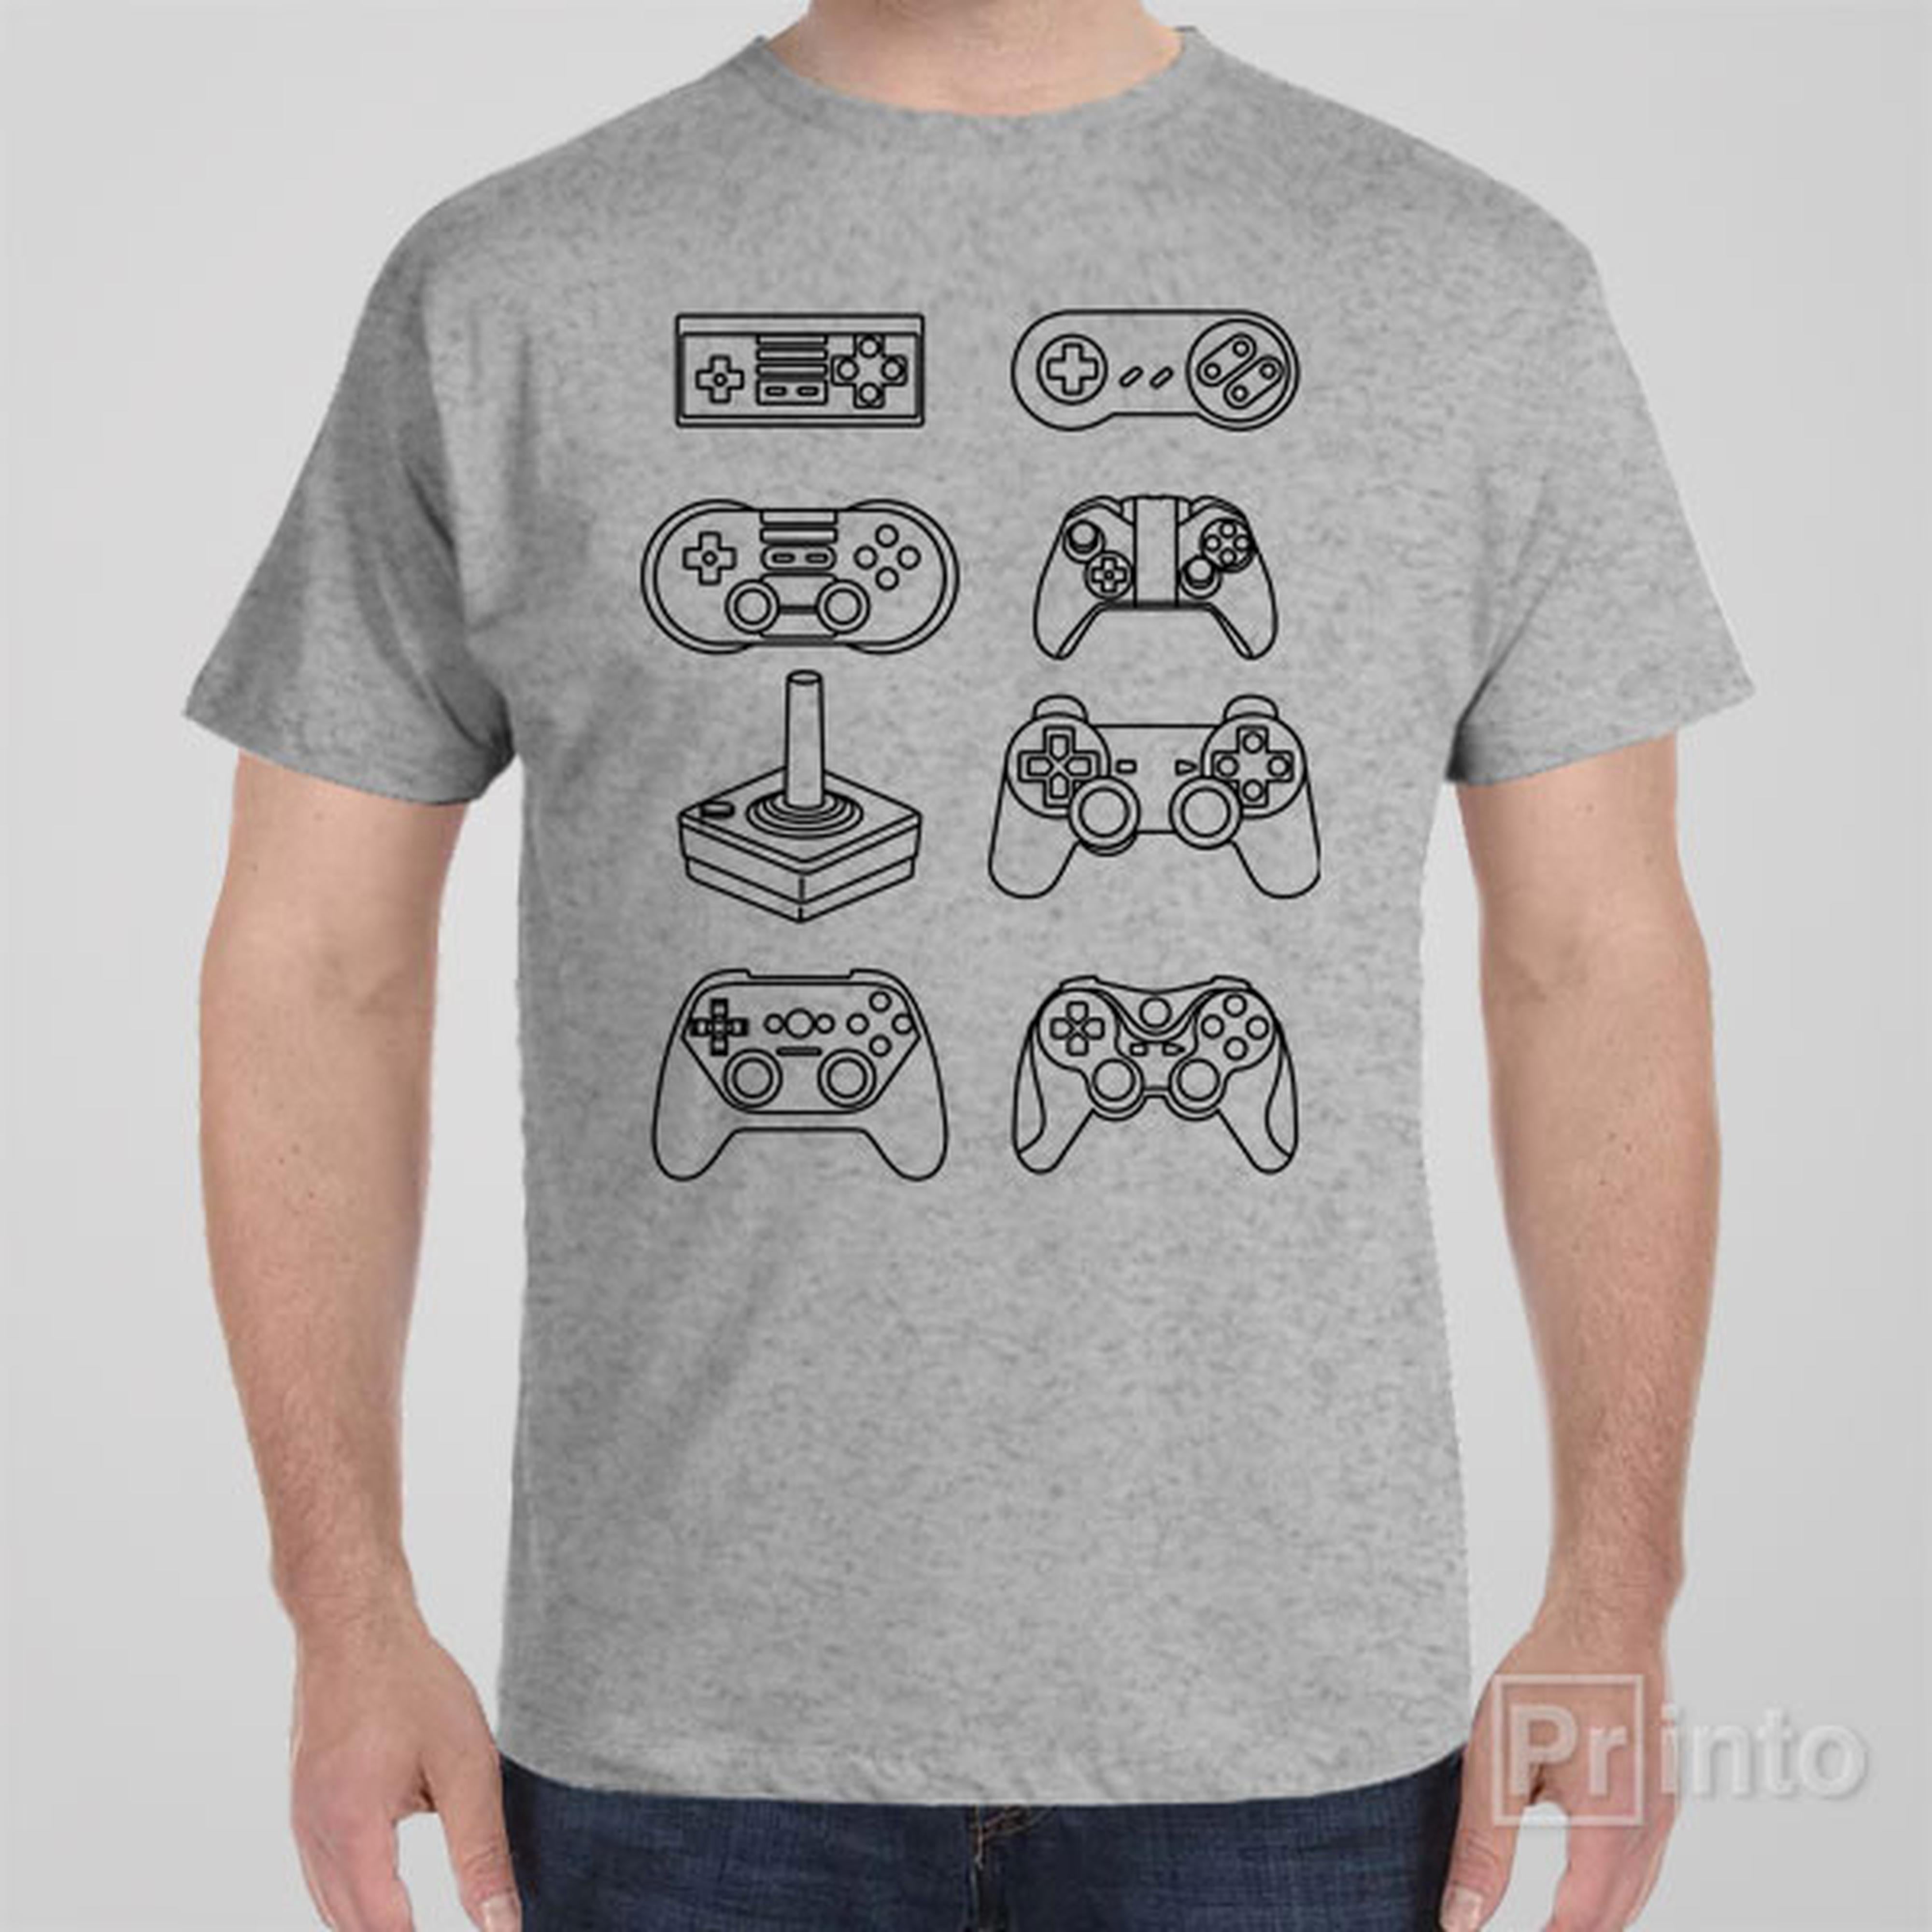 controller-evolution-t-shirt